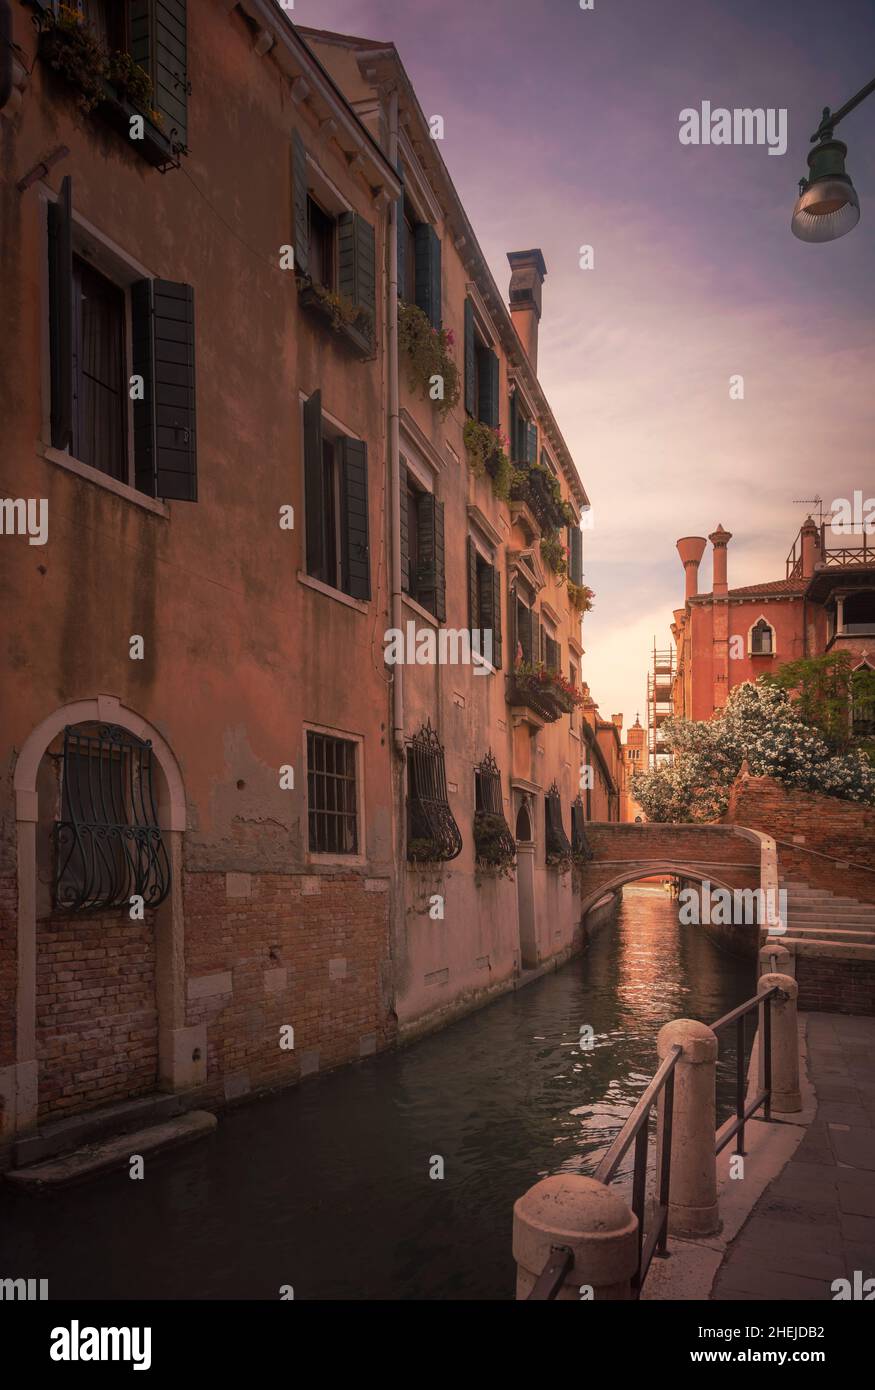 Paesaggio urbano di Venezia, canale d'acqua, ponte ed edifici tradizionali. Regione Veneto, Italia, Europa. Foto Stock